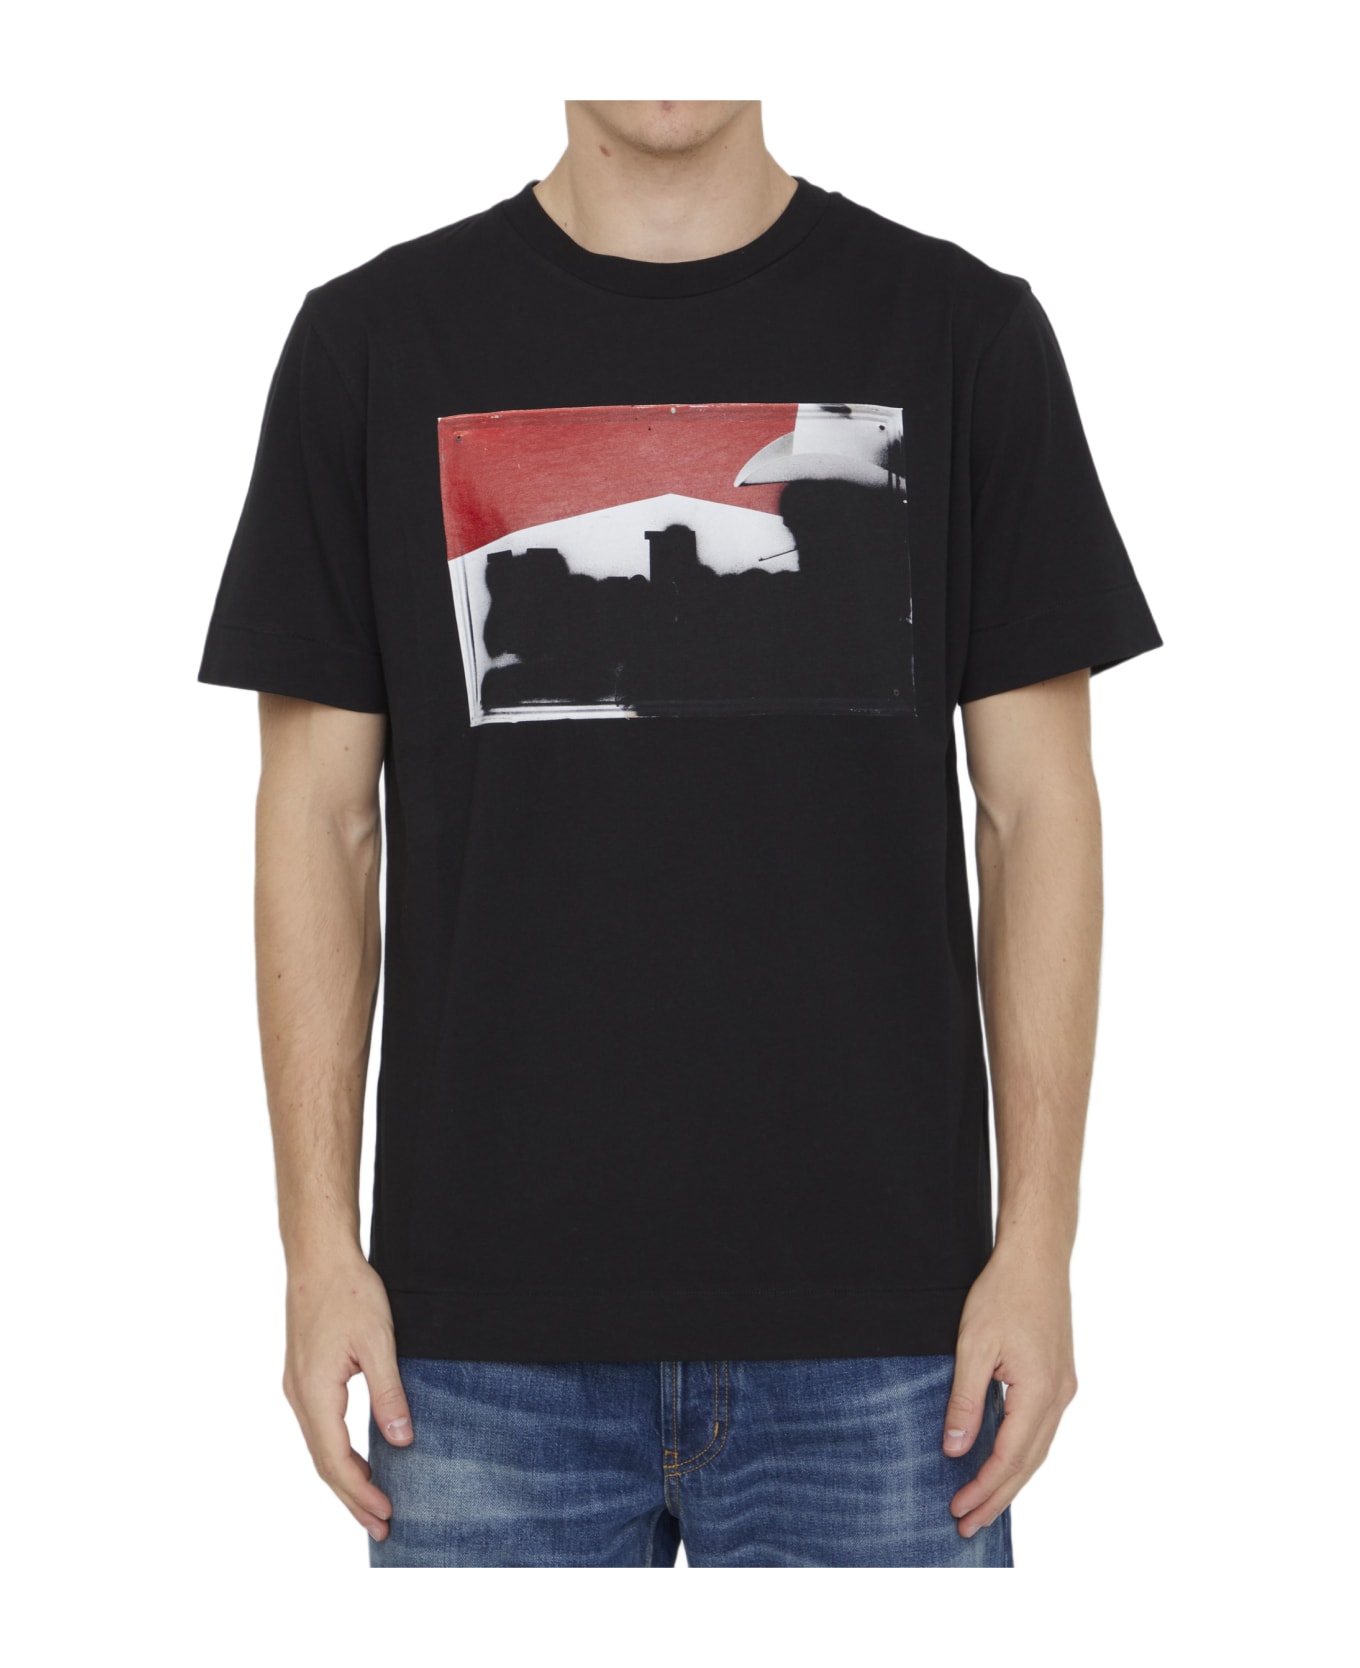 1017 ALYX 9SM Printed Cotton T-shirt - BLACK シャツ